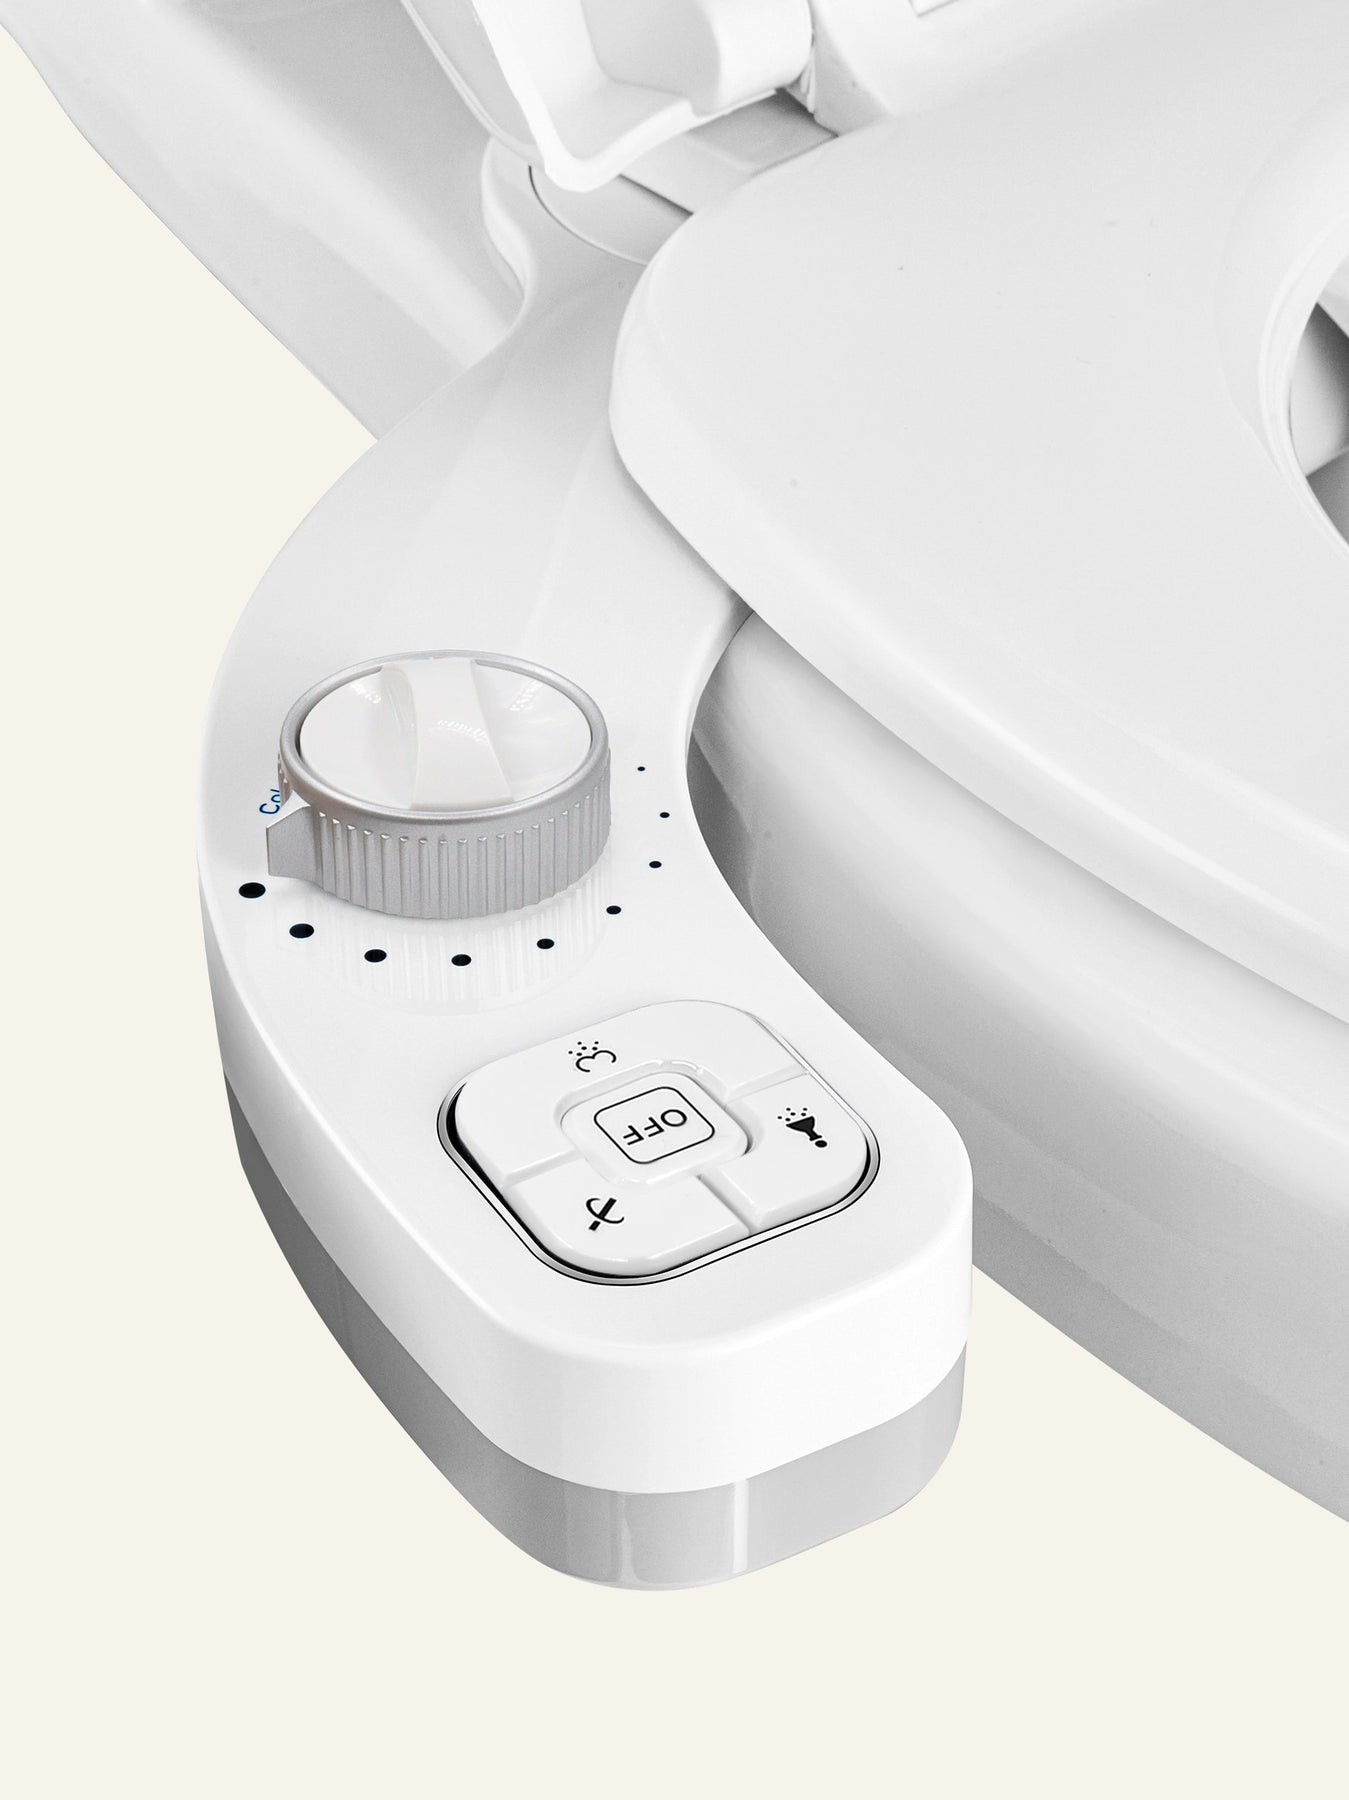 SAMODRA Toilet Bidet Ultra-Slim Bidet Toilet Seat Attachment With Brass  Inlet Adjustable Water Pressure Bathroom Hygienic Shower